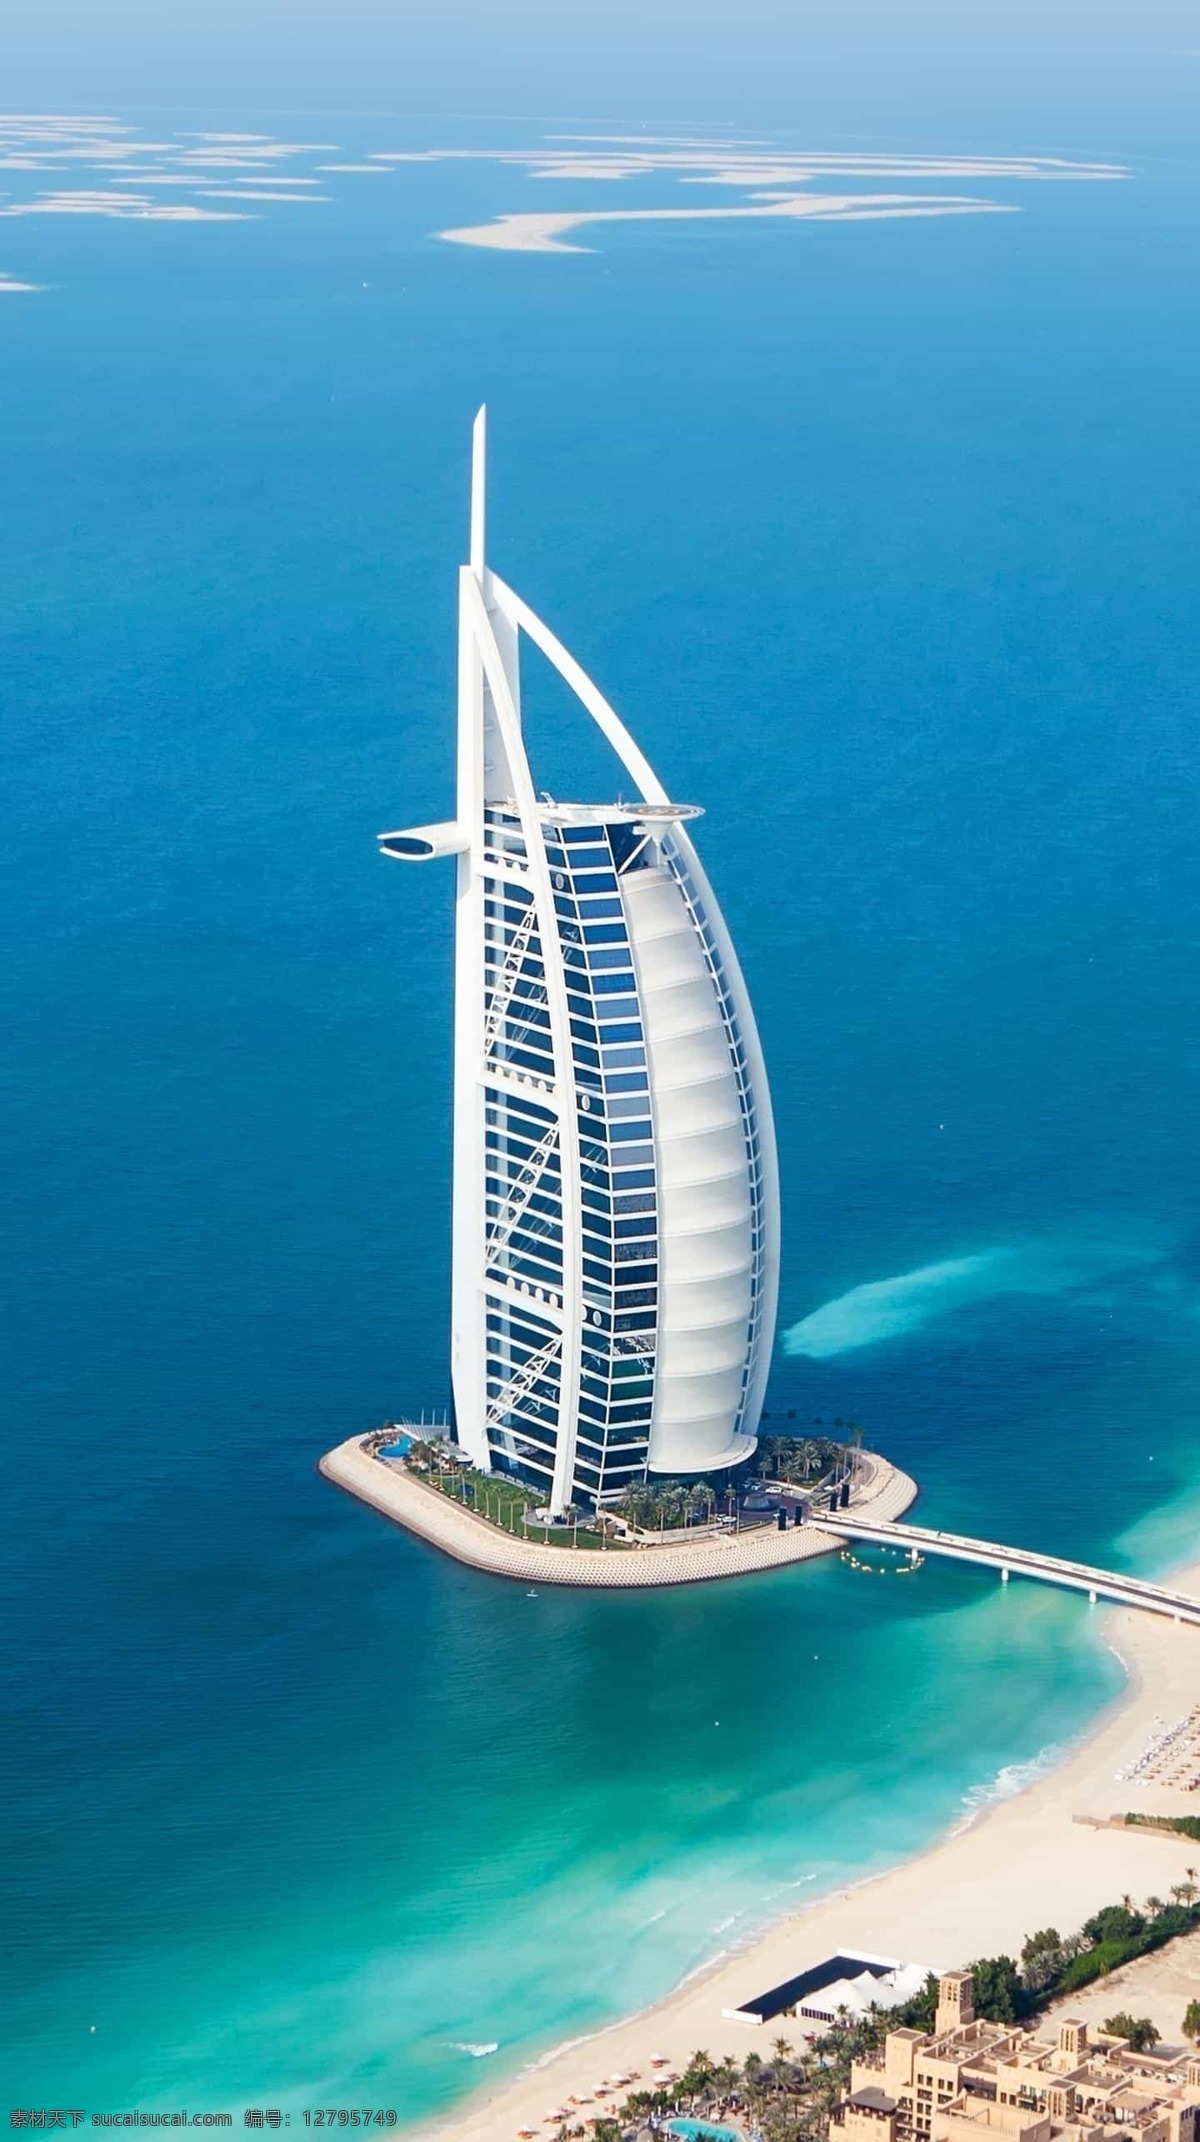 帆船酒店图片 帆船酒店 迪拜 建筑 大海 渐变 太阳 都市 天空 树 蓝天 蓝色 地标 高楼大厦 镜面 倒影 摩天楼